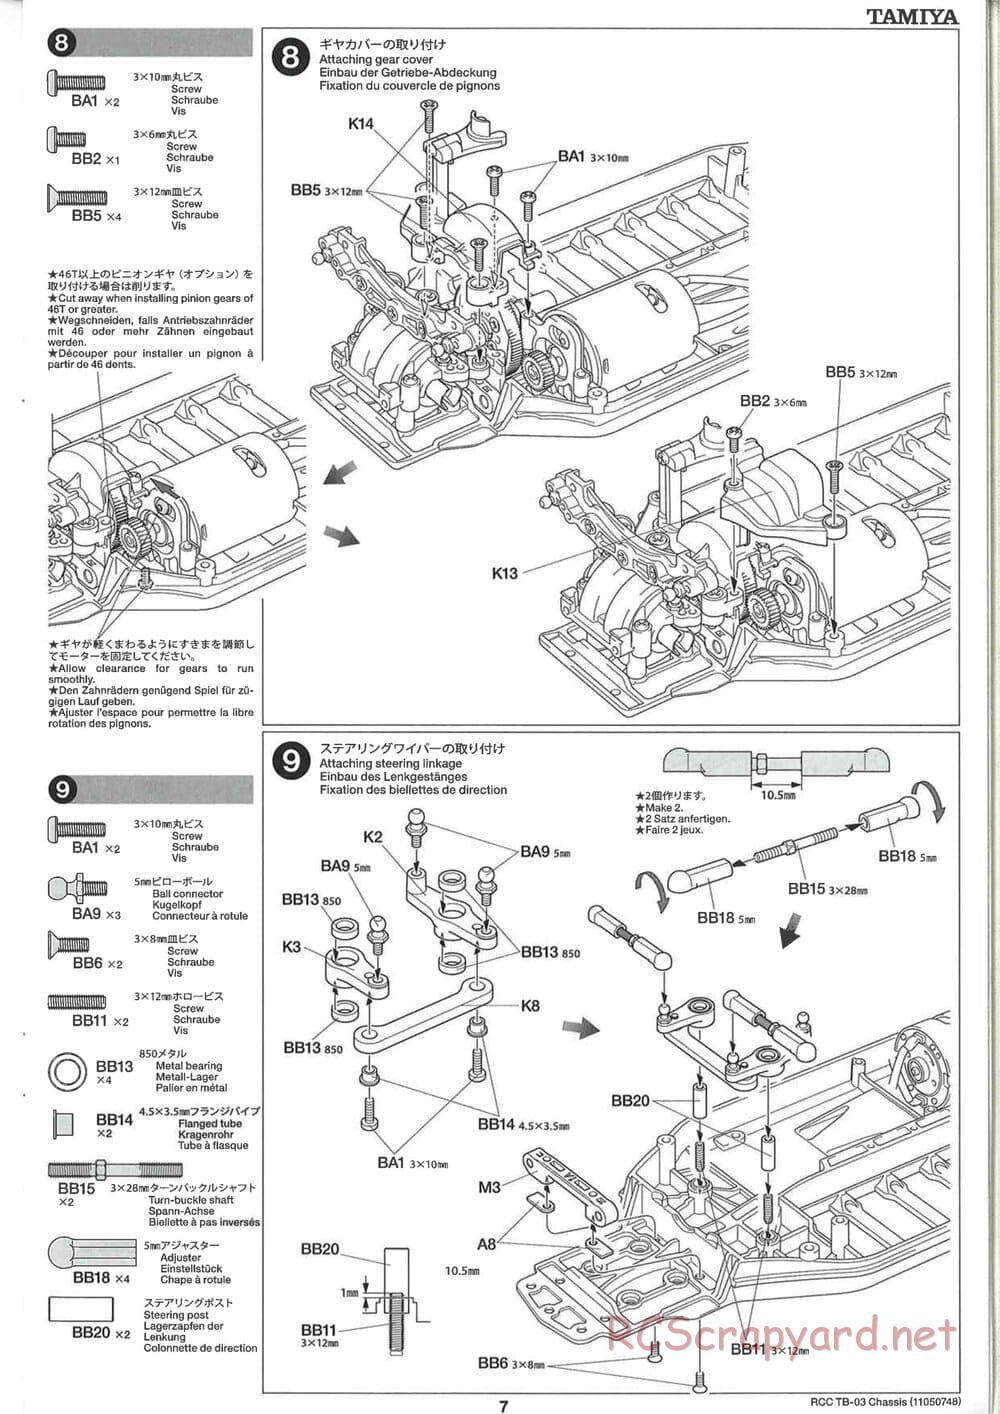 Tamiya - TB-03 Chassis - Manual - Page 7